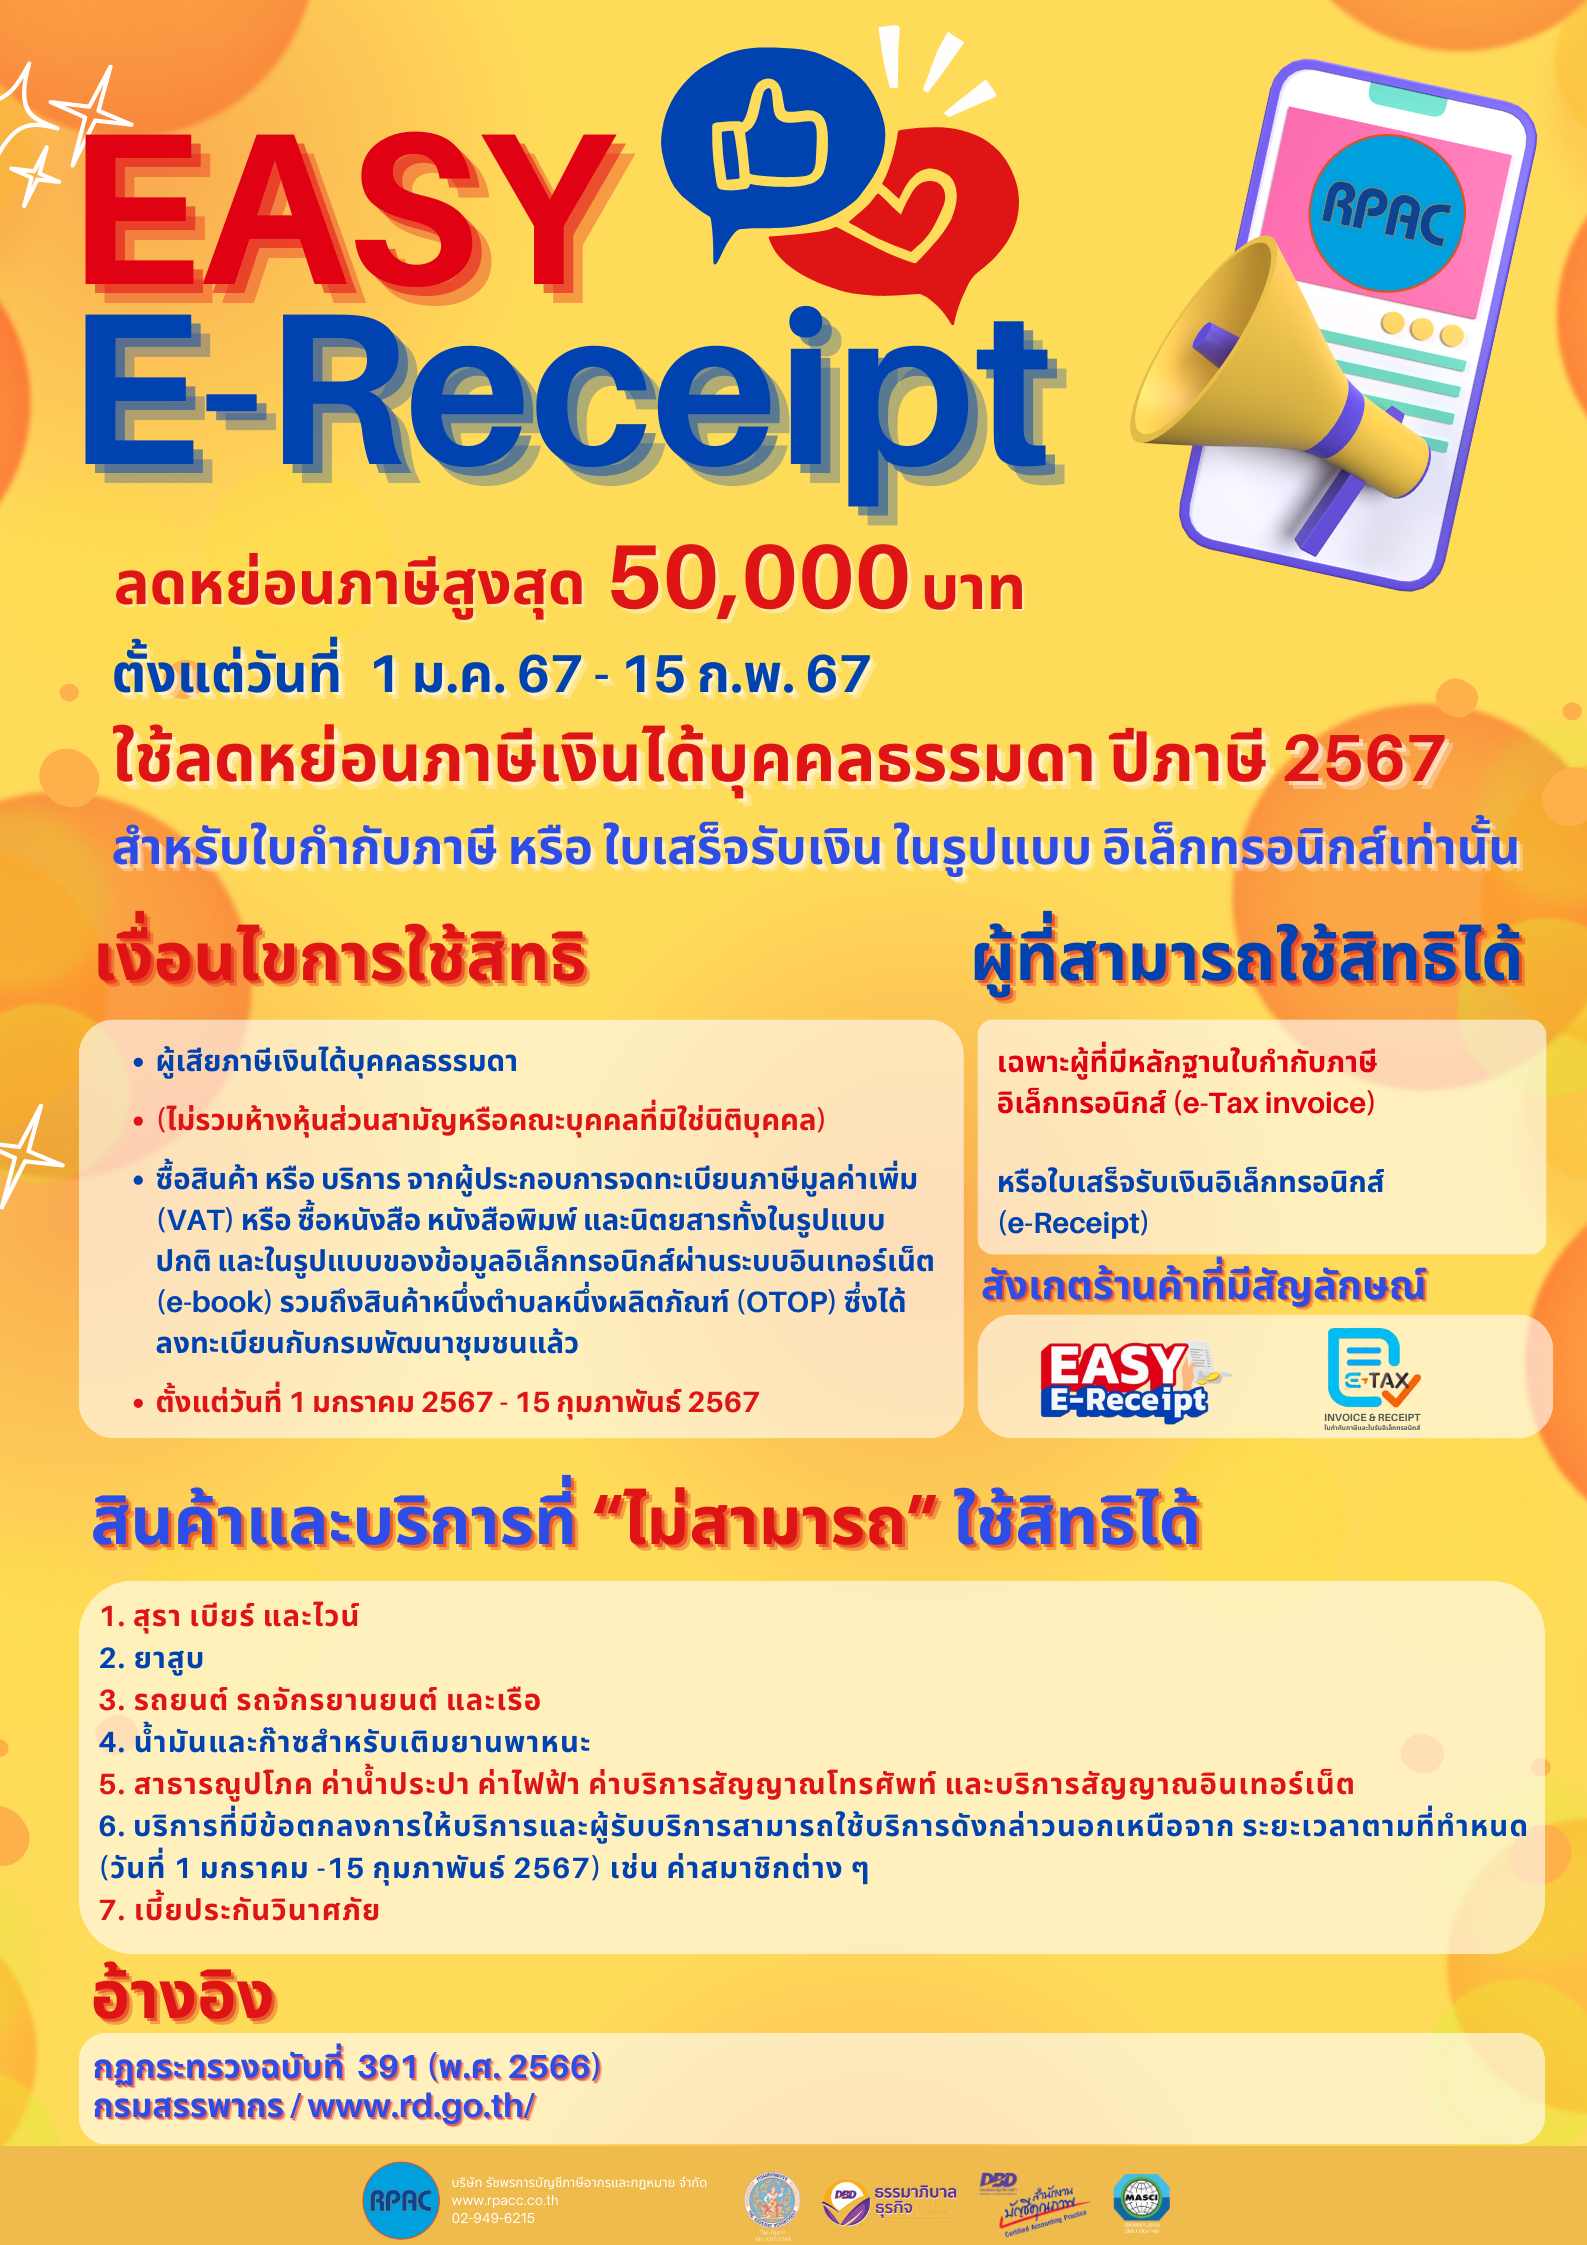 EASY E-Receipt ลดหย่อนภาษีสูงสุด 50,000 บาท